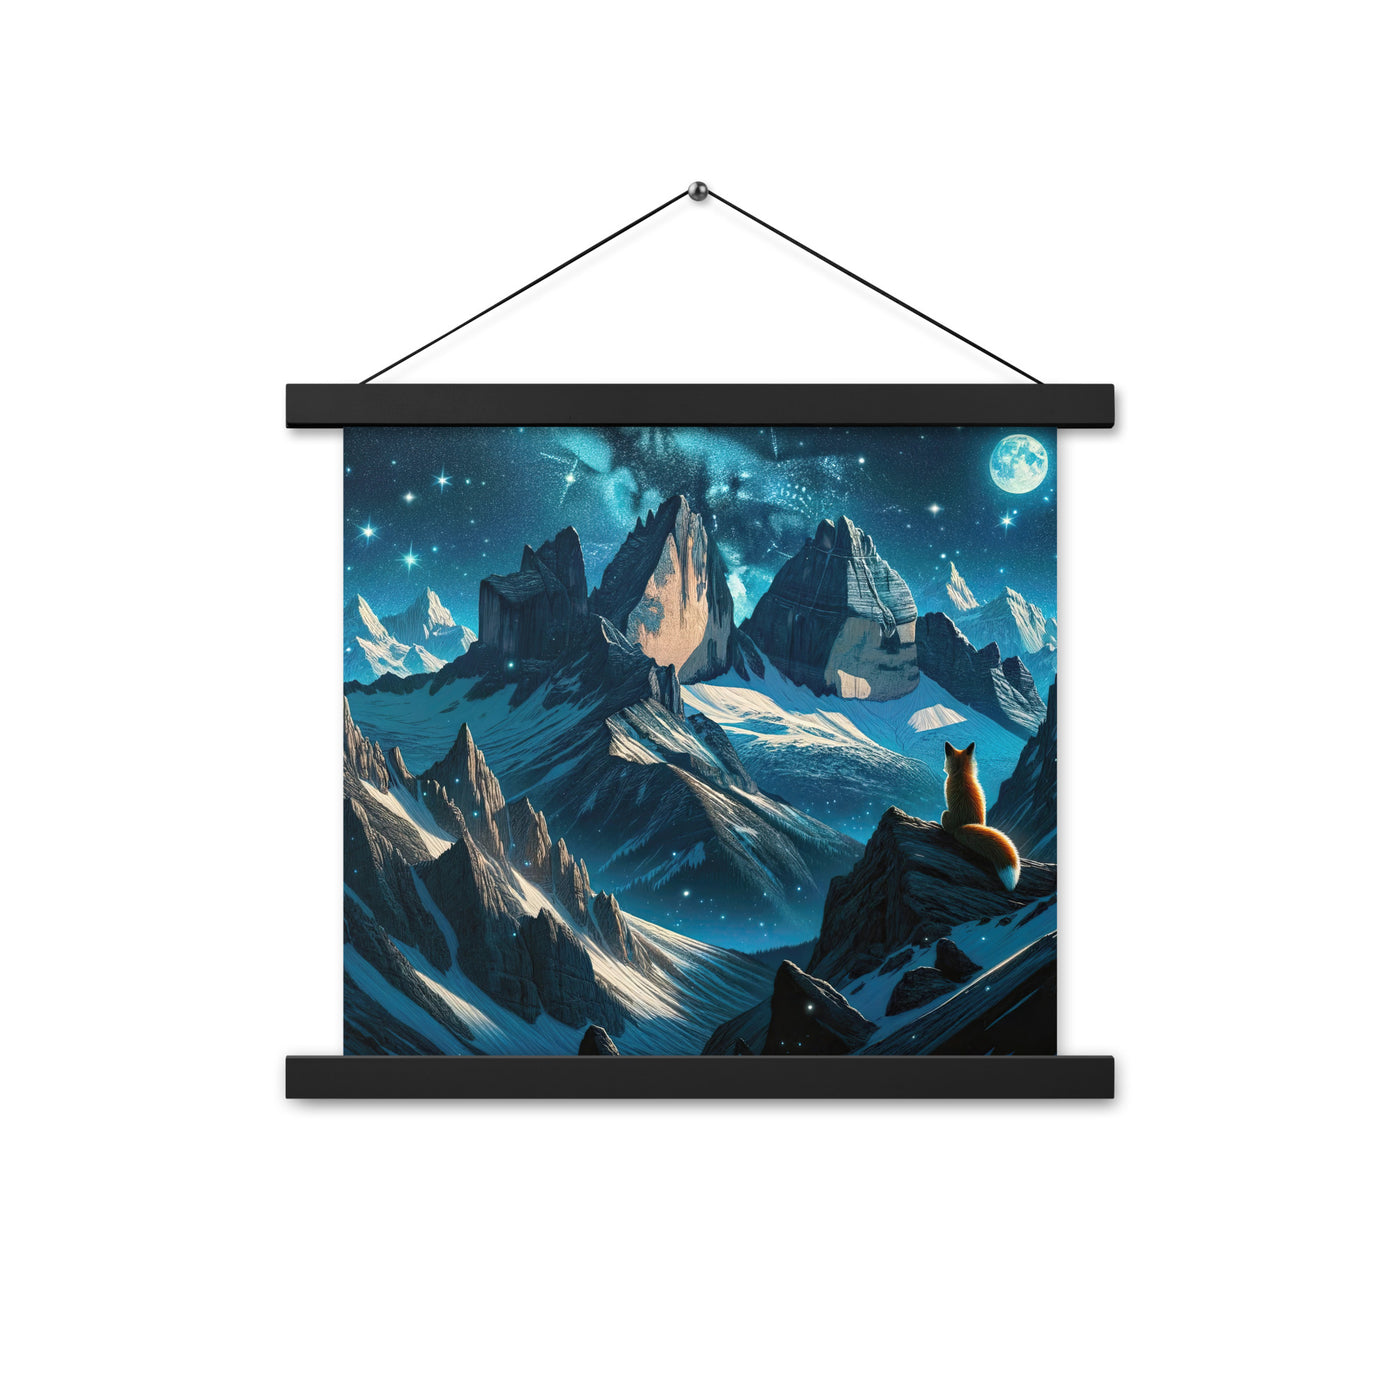 Fuchs in Alpennacht: Digitale Kunst der eisigen Berge im Mondlicht - Premium Poster mit Aufhängung camping xxx yyy zzz 35.6 x 35.6 cm